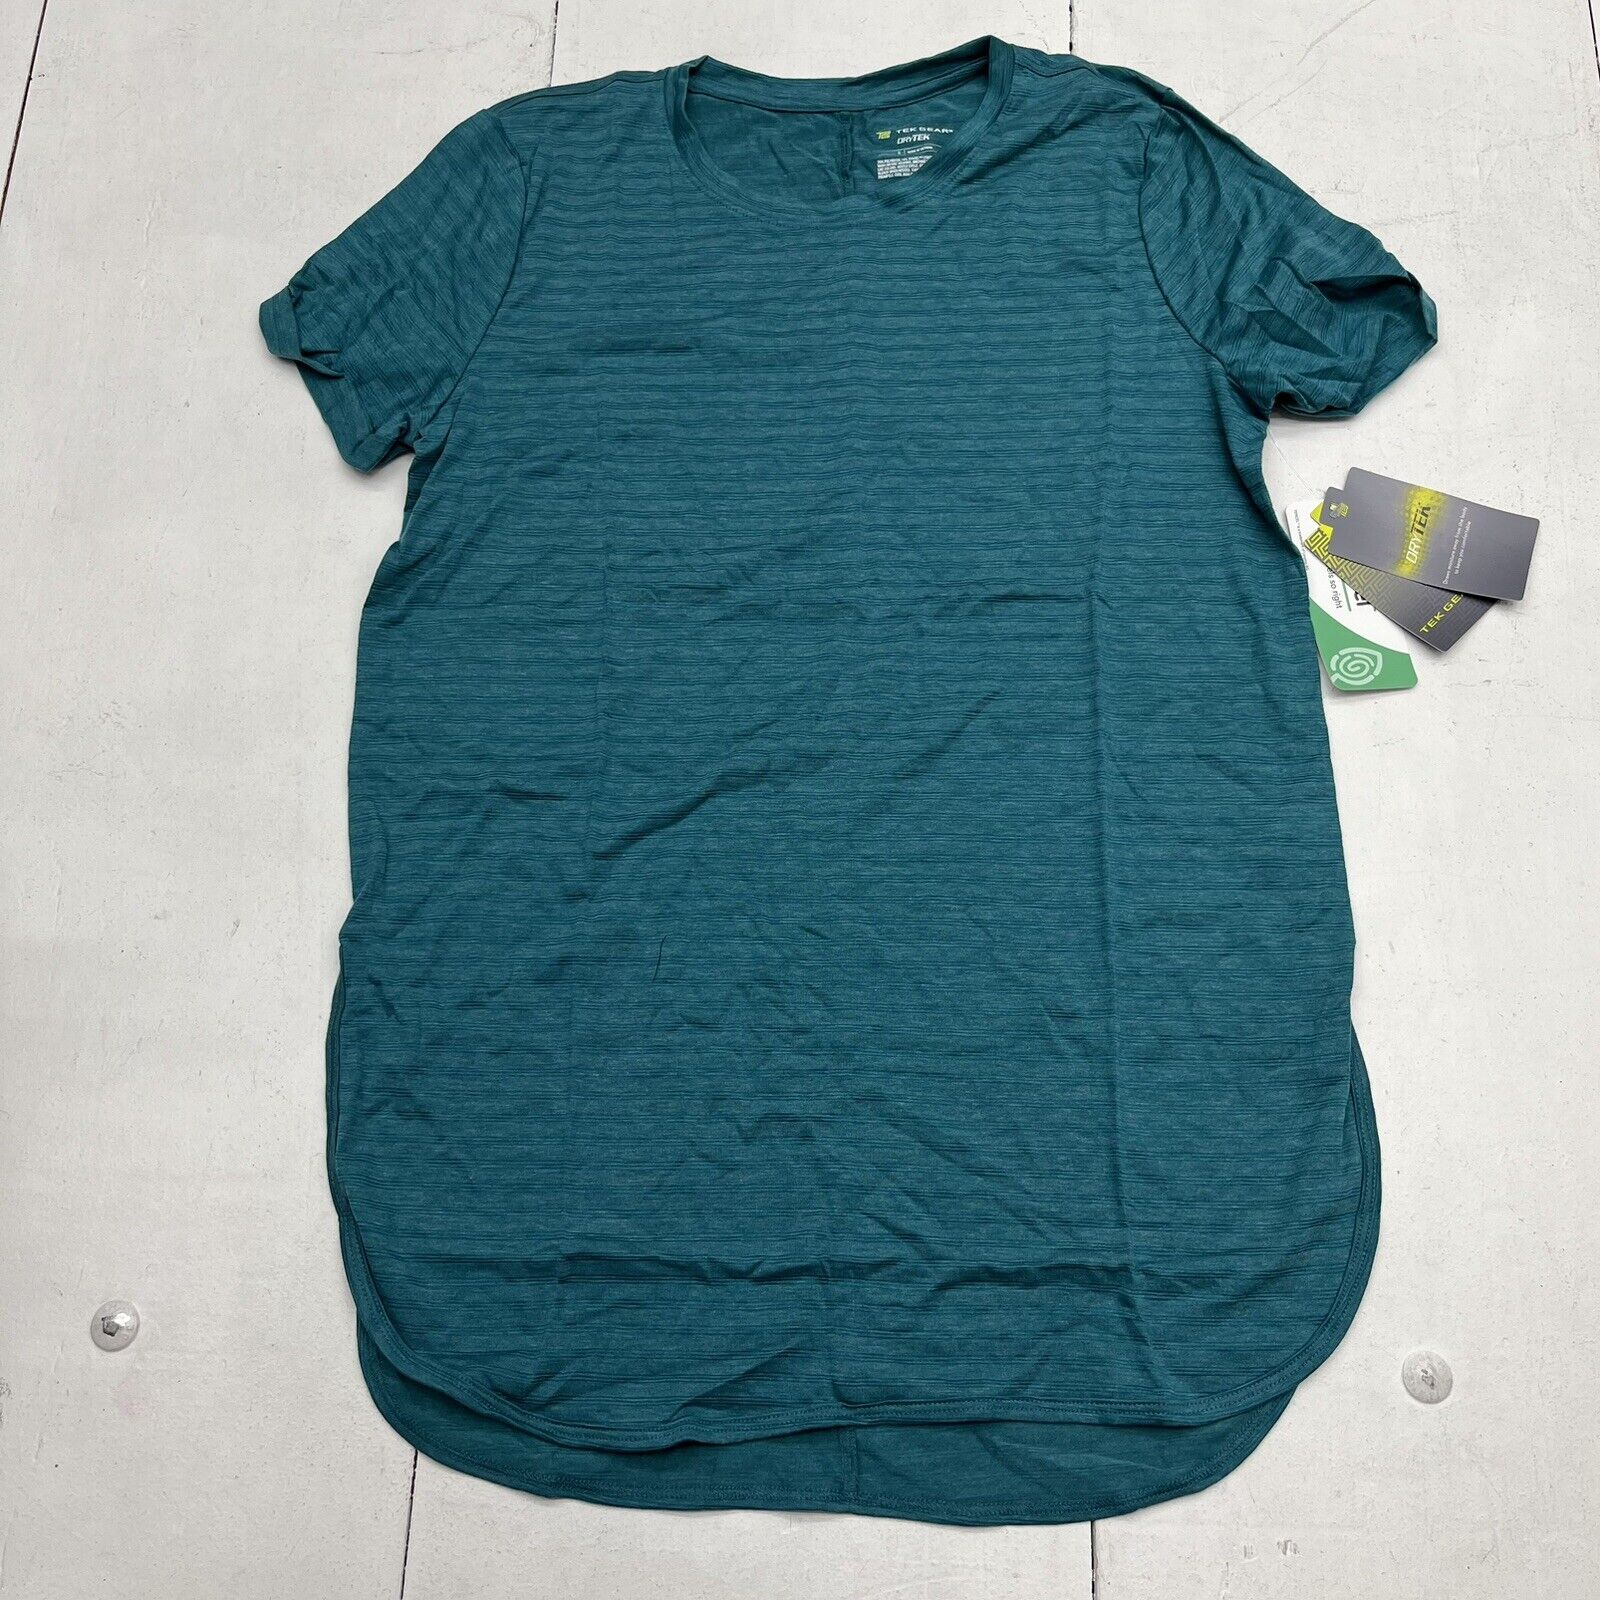 Tek Gear Turquoise Short Sleeve Dry Tek Shirt Men’s Size Small NEW